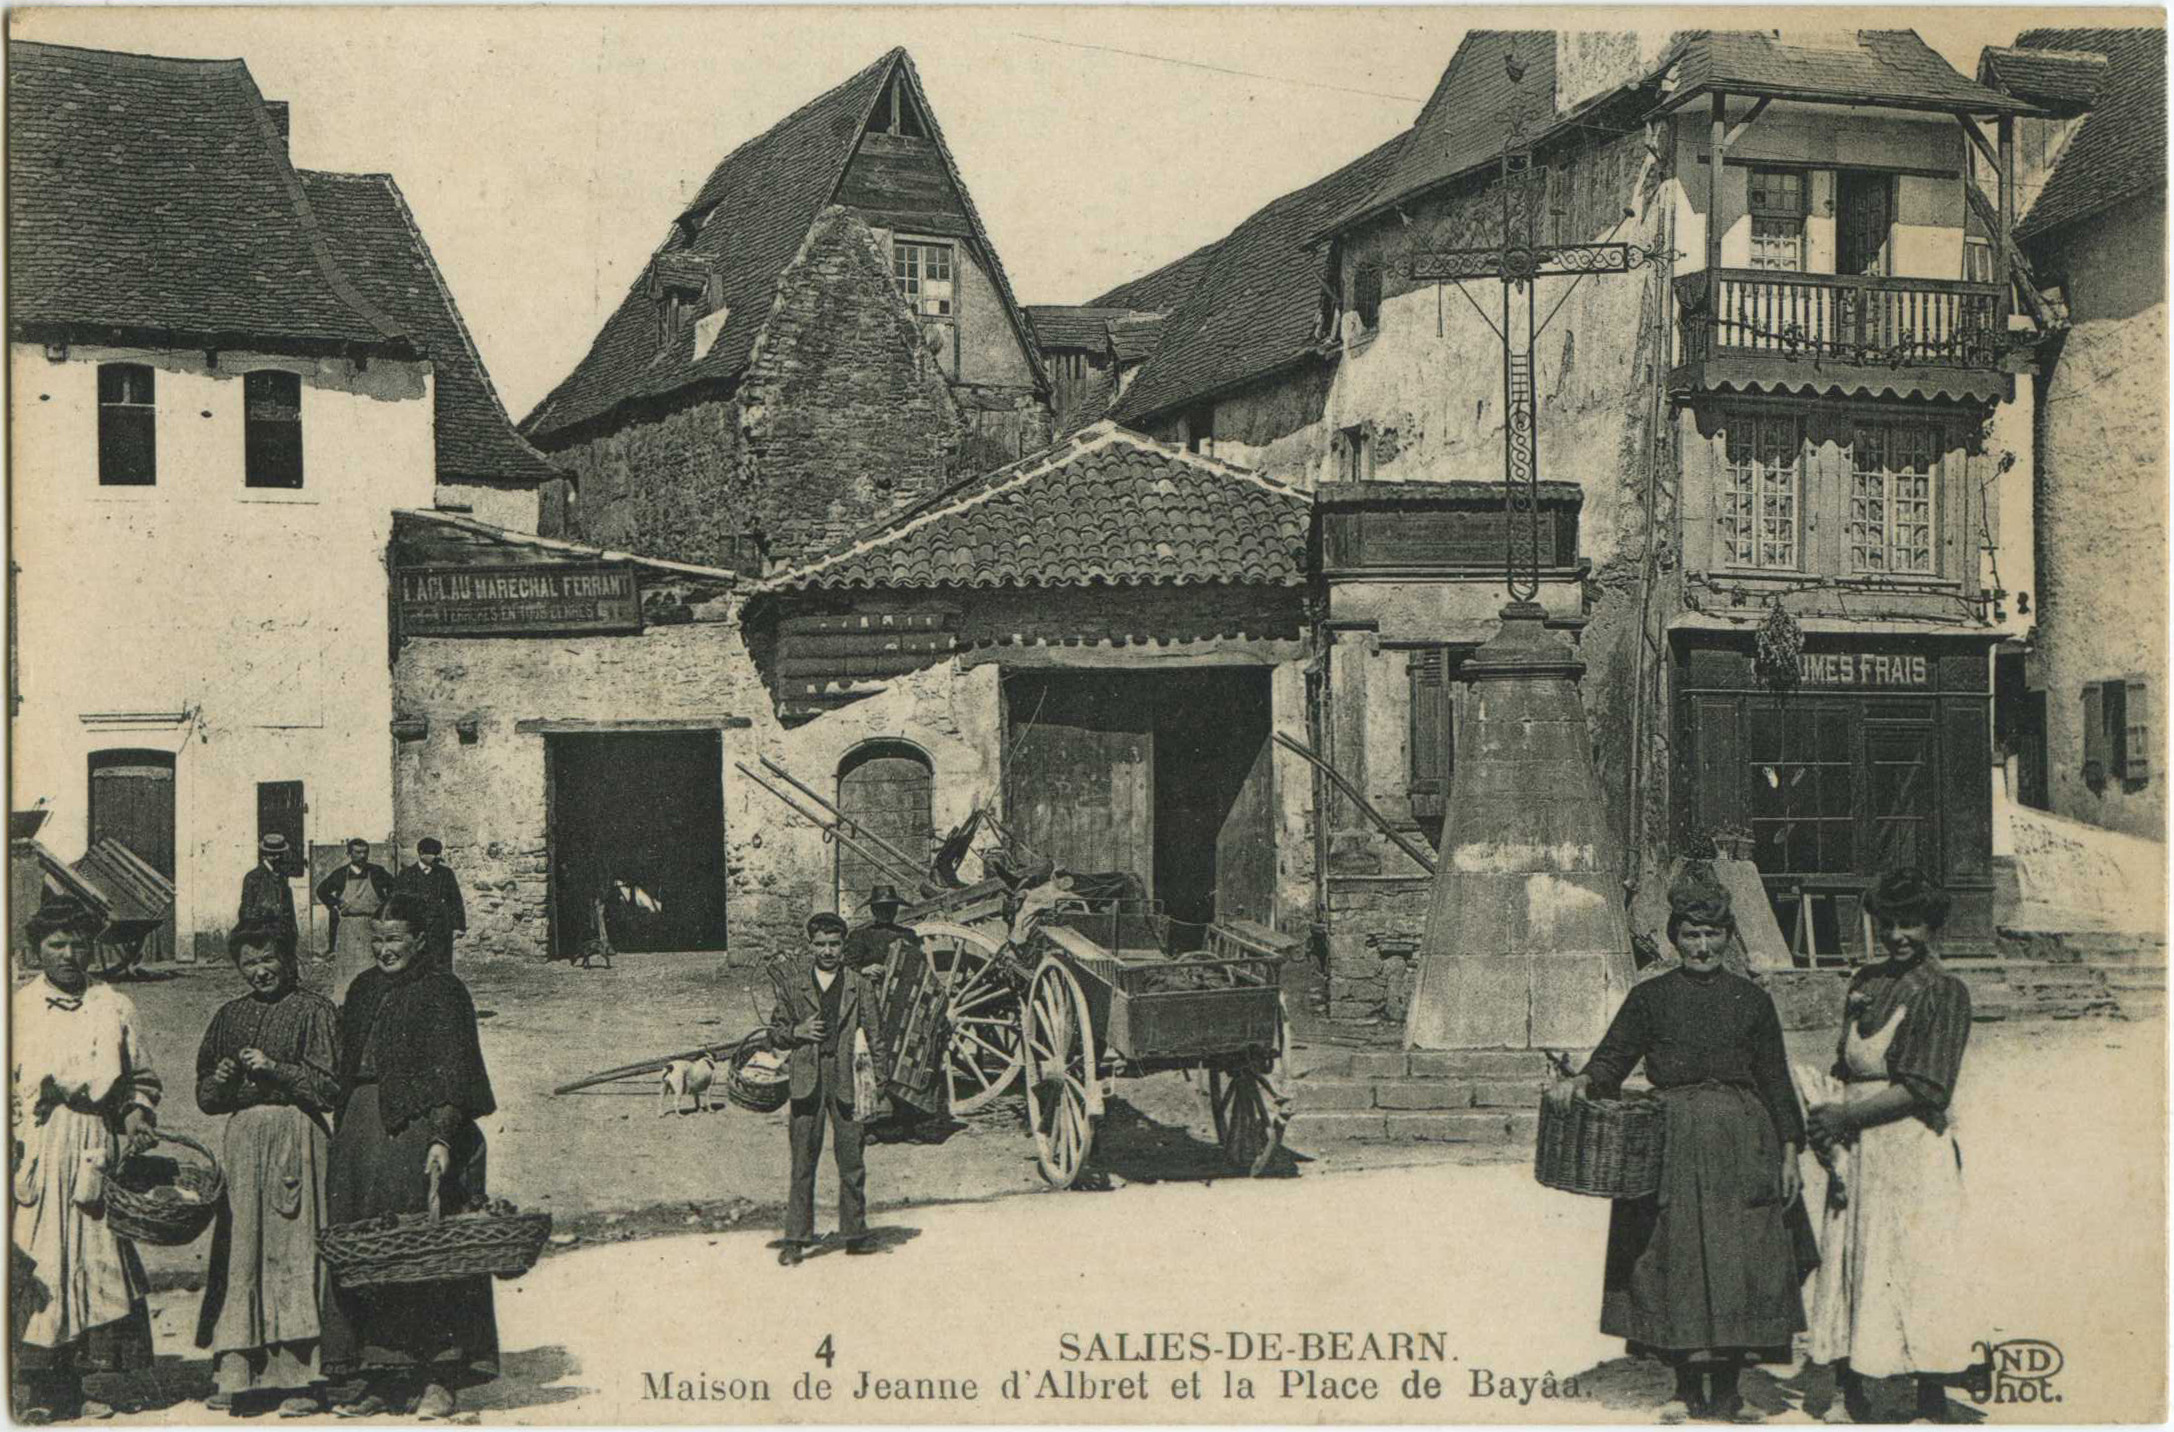 Salies-de-Béarn - Maison de Jeanne d'Albret et la Place de Bayâa